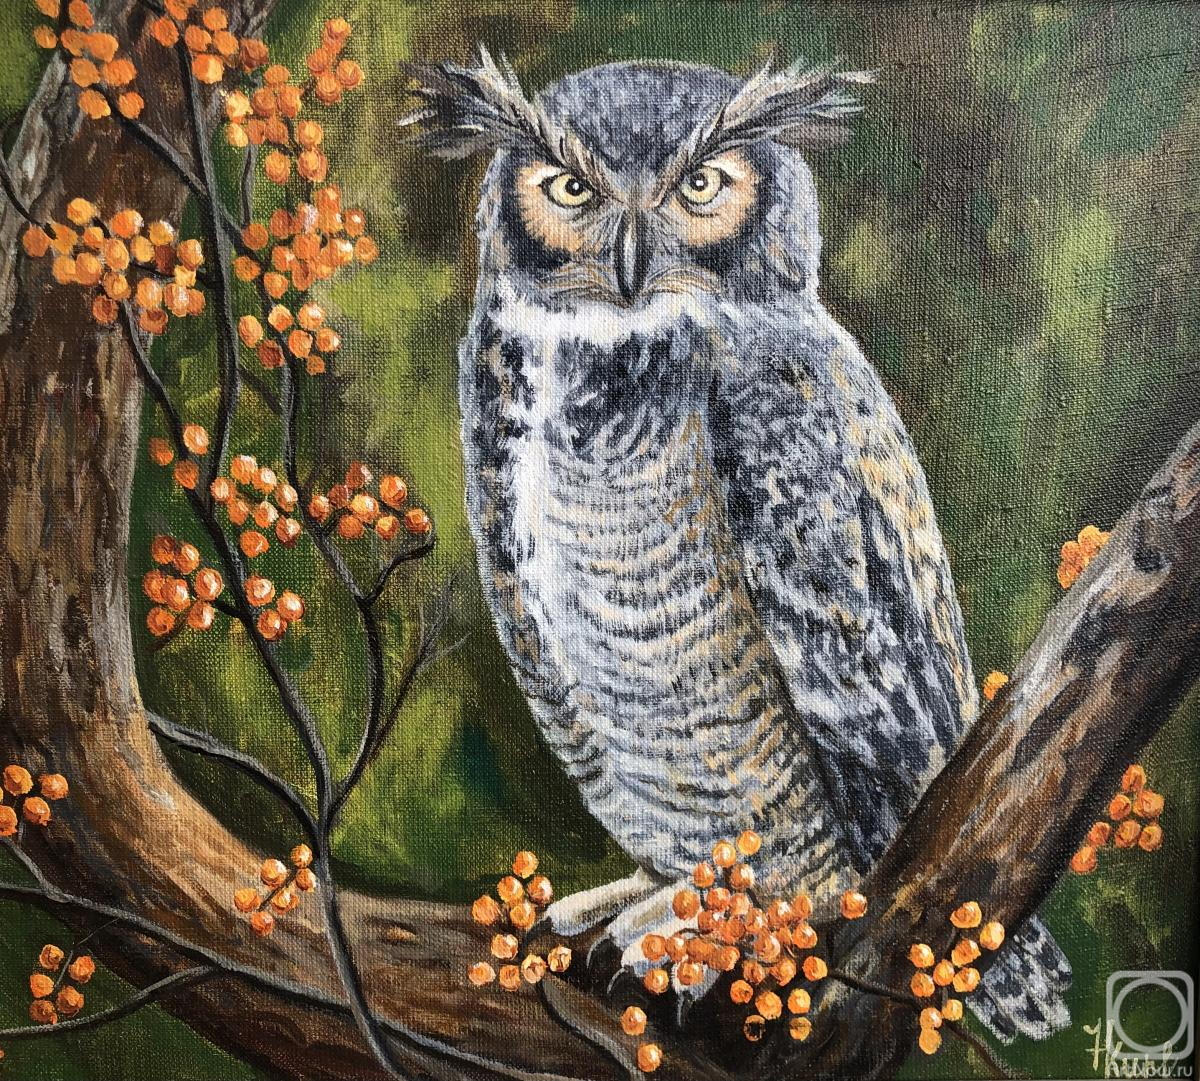 Kirilina Nadezhda. The Owl